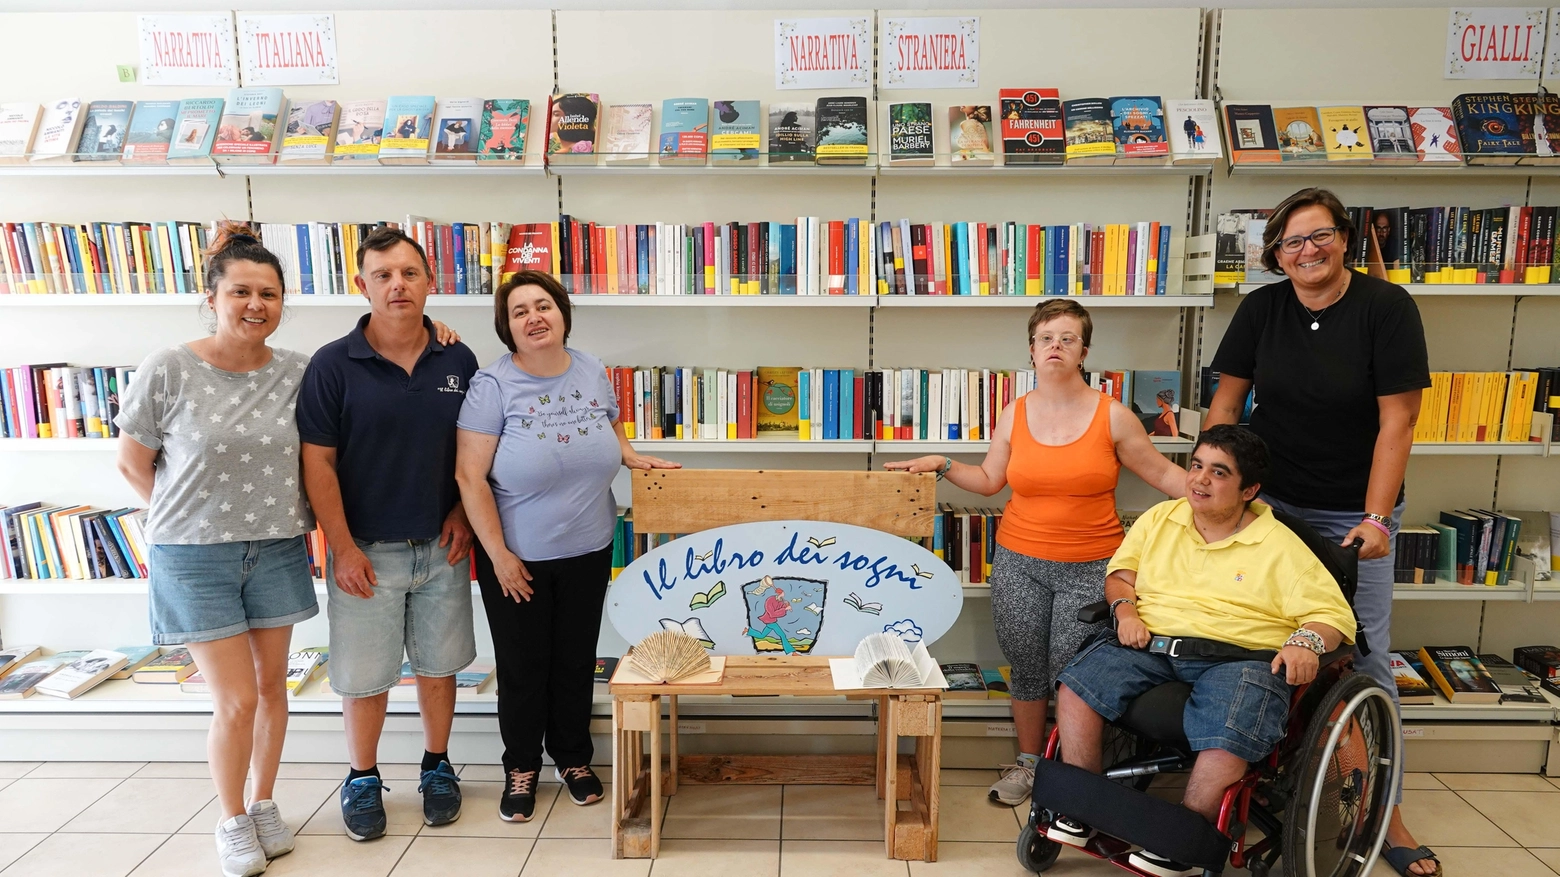 La libreria di Ceparana è al centro di un progetto occupazionale rivolto alle persone con disabilità in collaborazione con il centro socioeducativo "Il Nuovo volo". Disponibili volumi nuovi e usati.